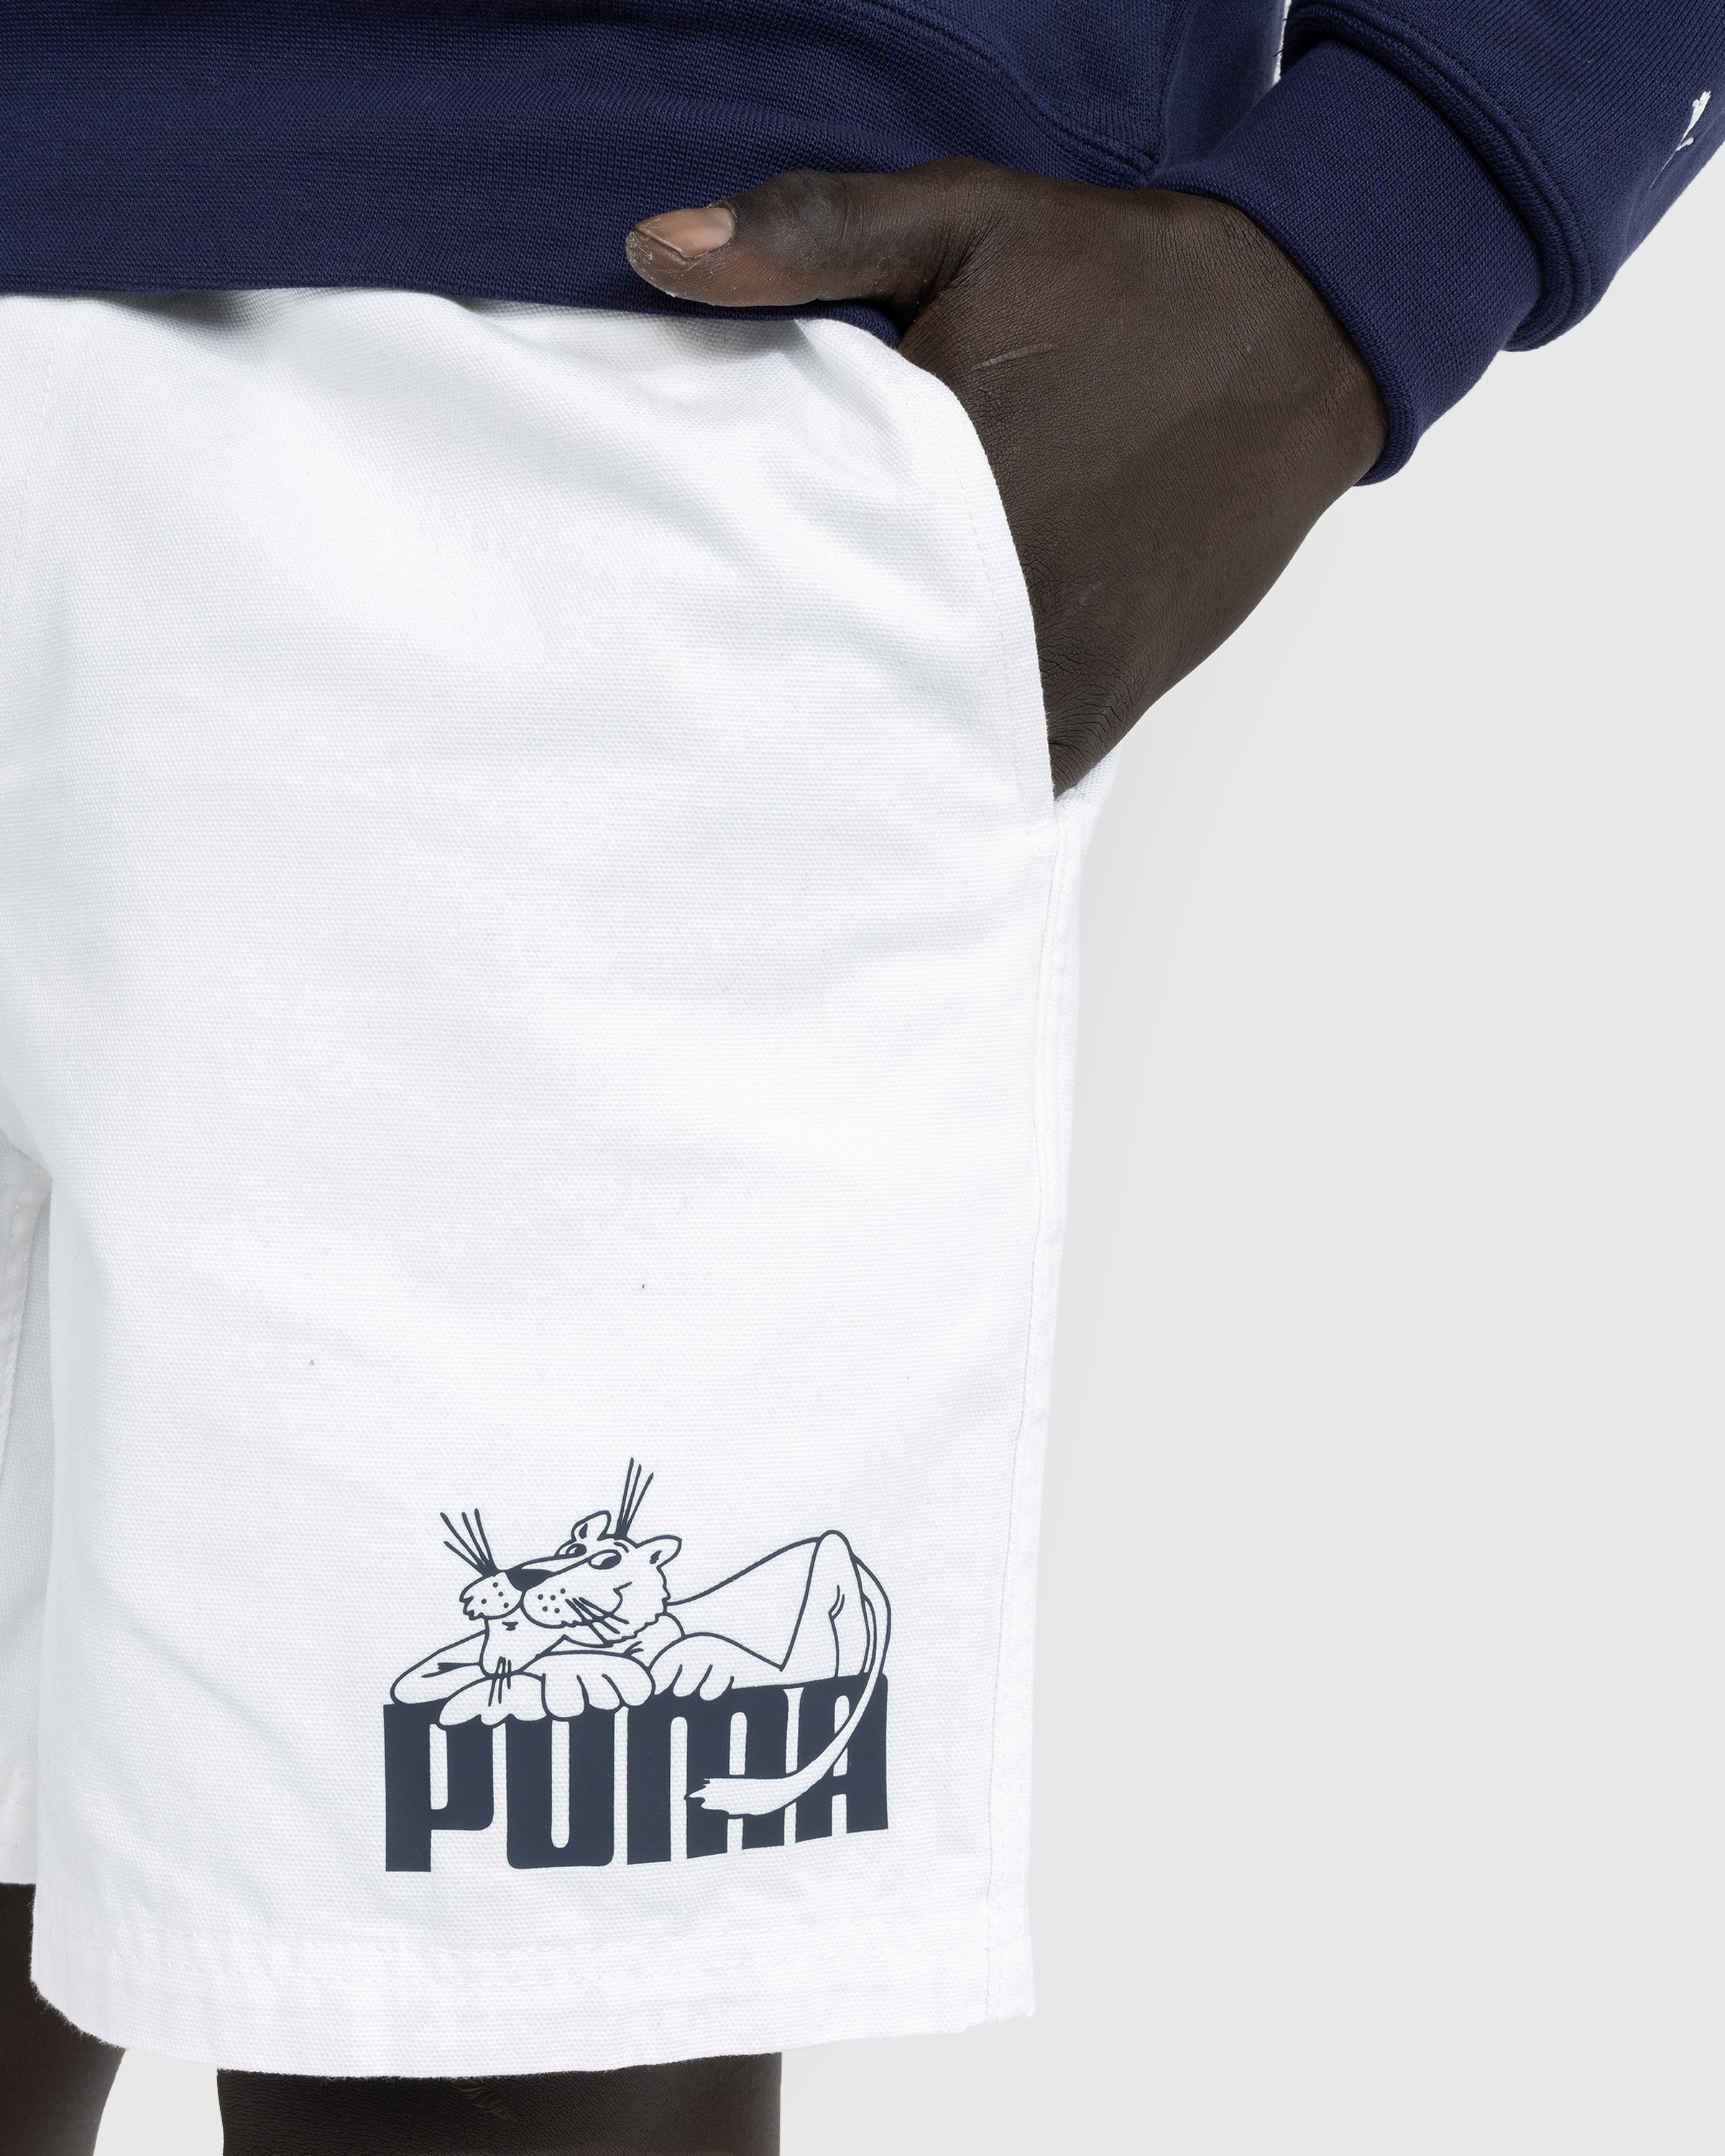 Puma - NOAH Shorts - Clothing - White - Image 4